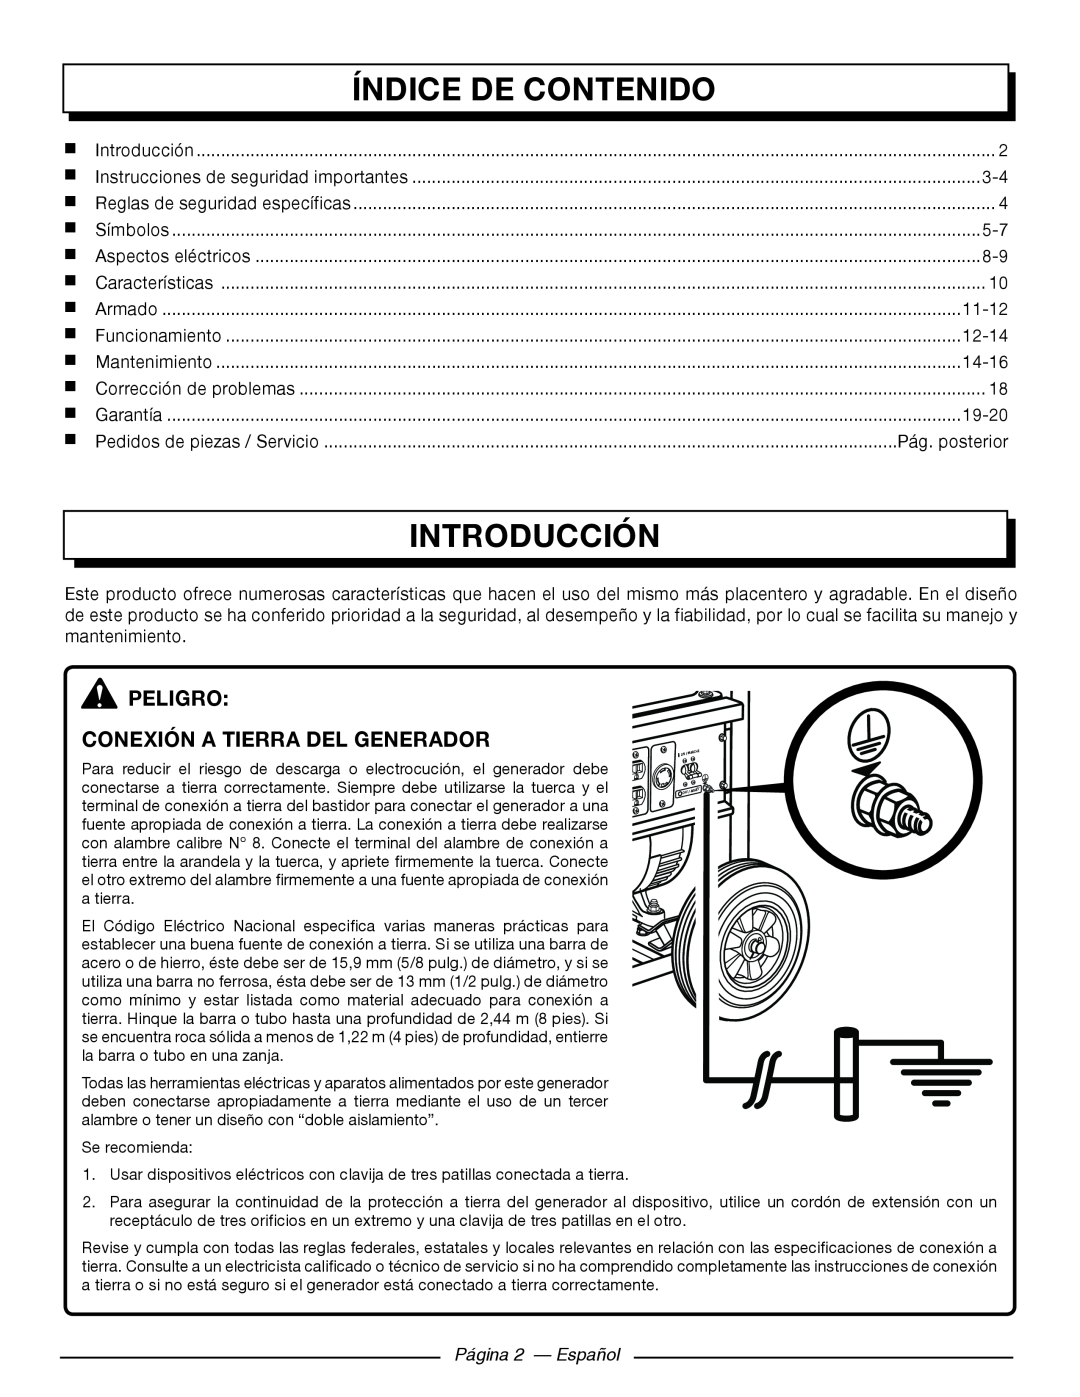 Homelite HG5000 Índice De Contenido, Introducción, peligro Conexión a tierra del generador, Página 2 — Español 